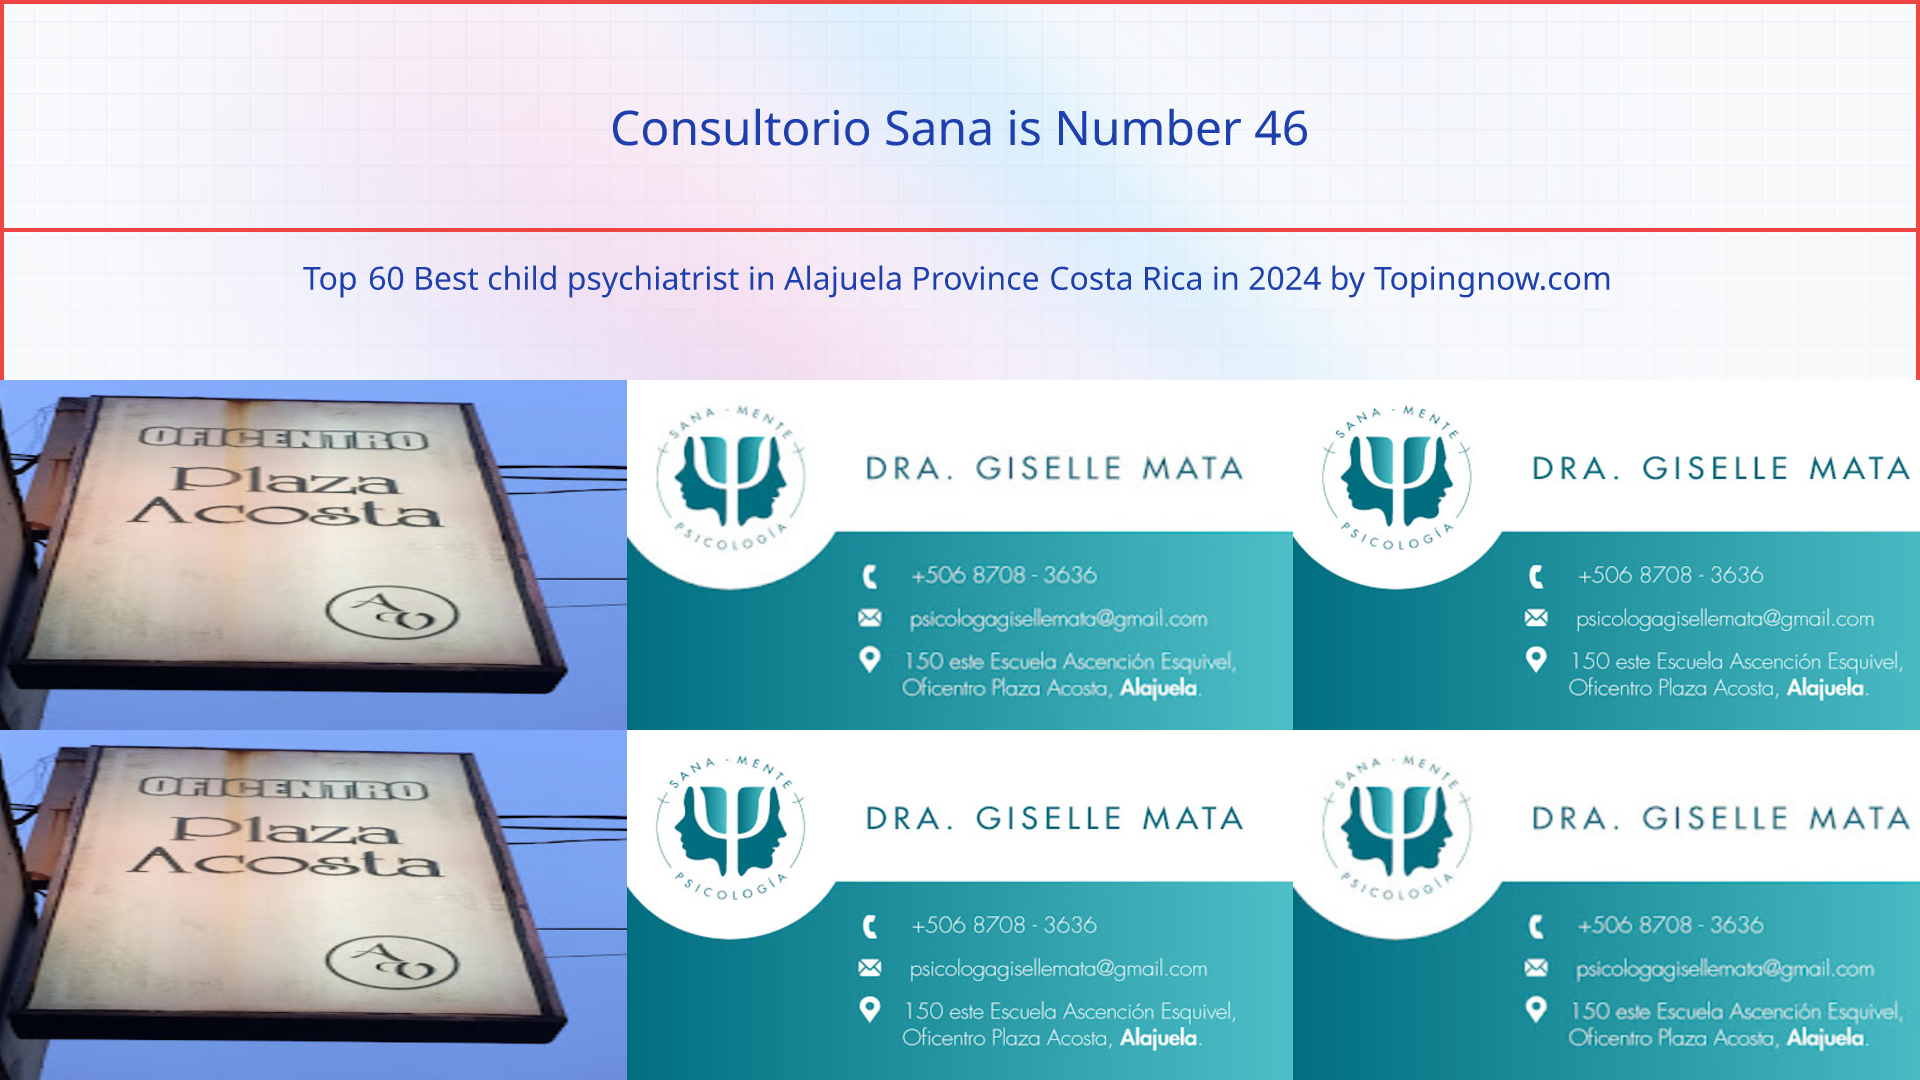 Consultorio Sana: Top 60 Best child psychiatrist in Alajuela Province Costa Rica in 2024